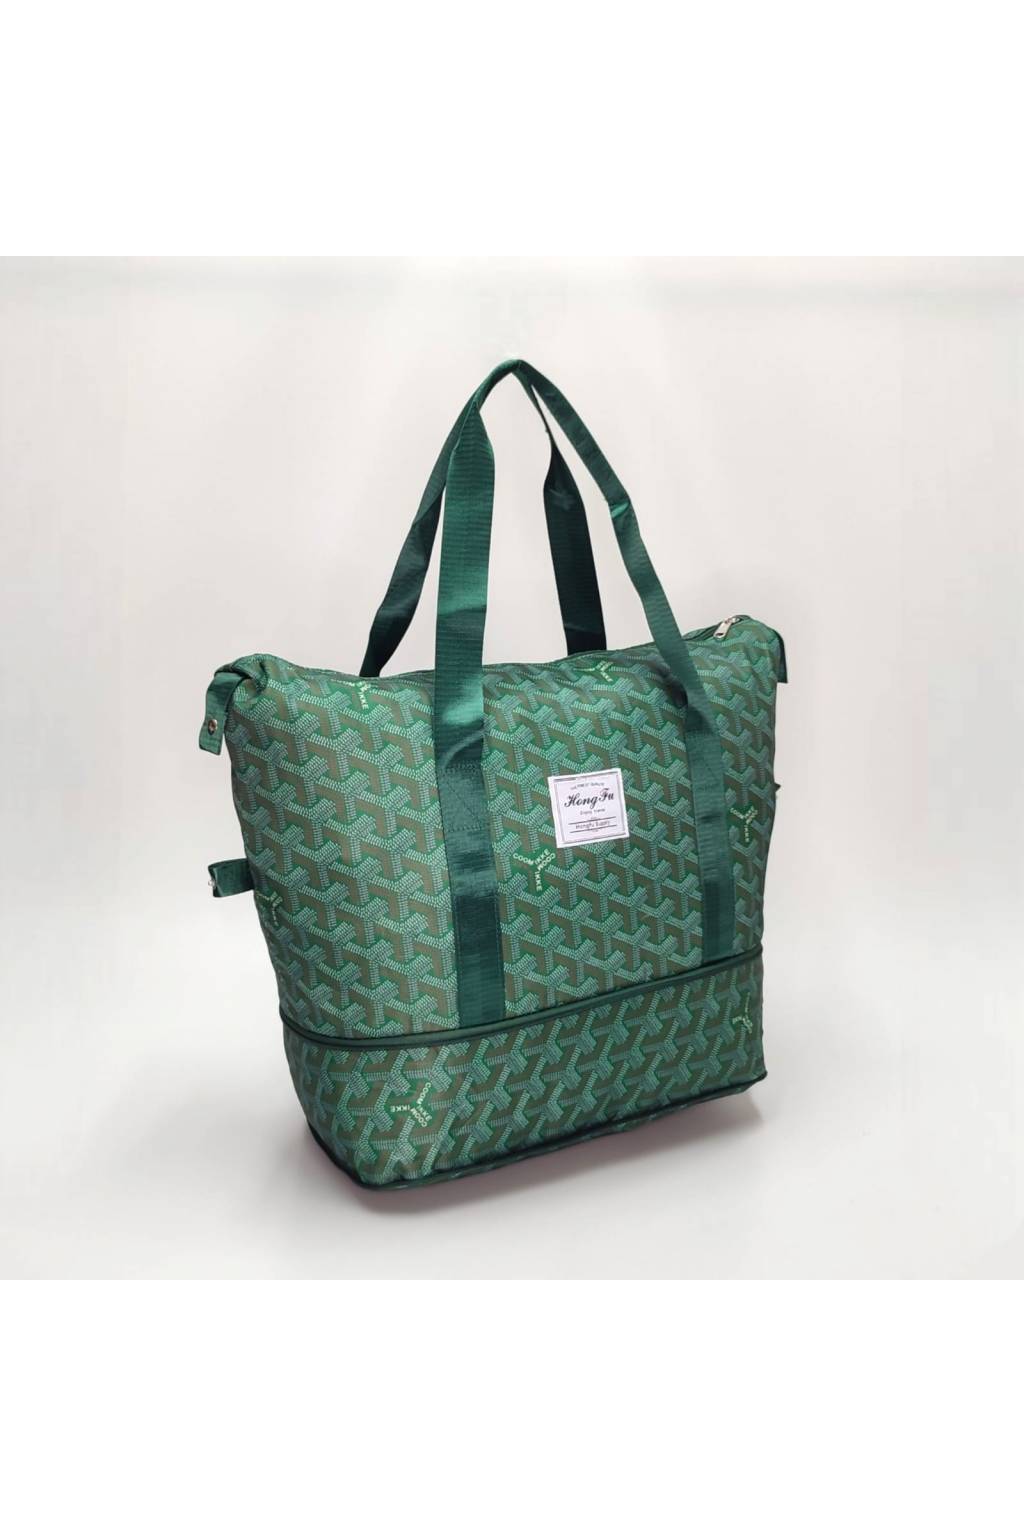 Multifunkčná taška B7726 zelená www.kabelky vypredaj (14)